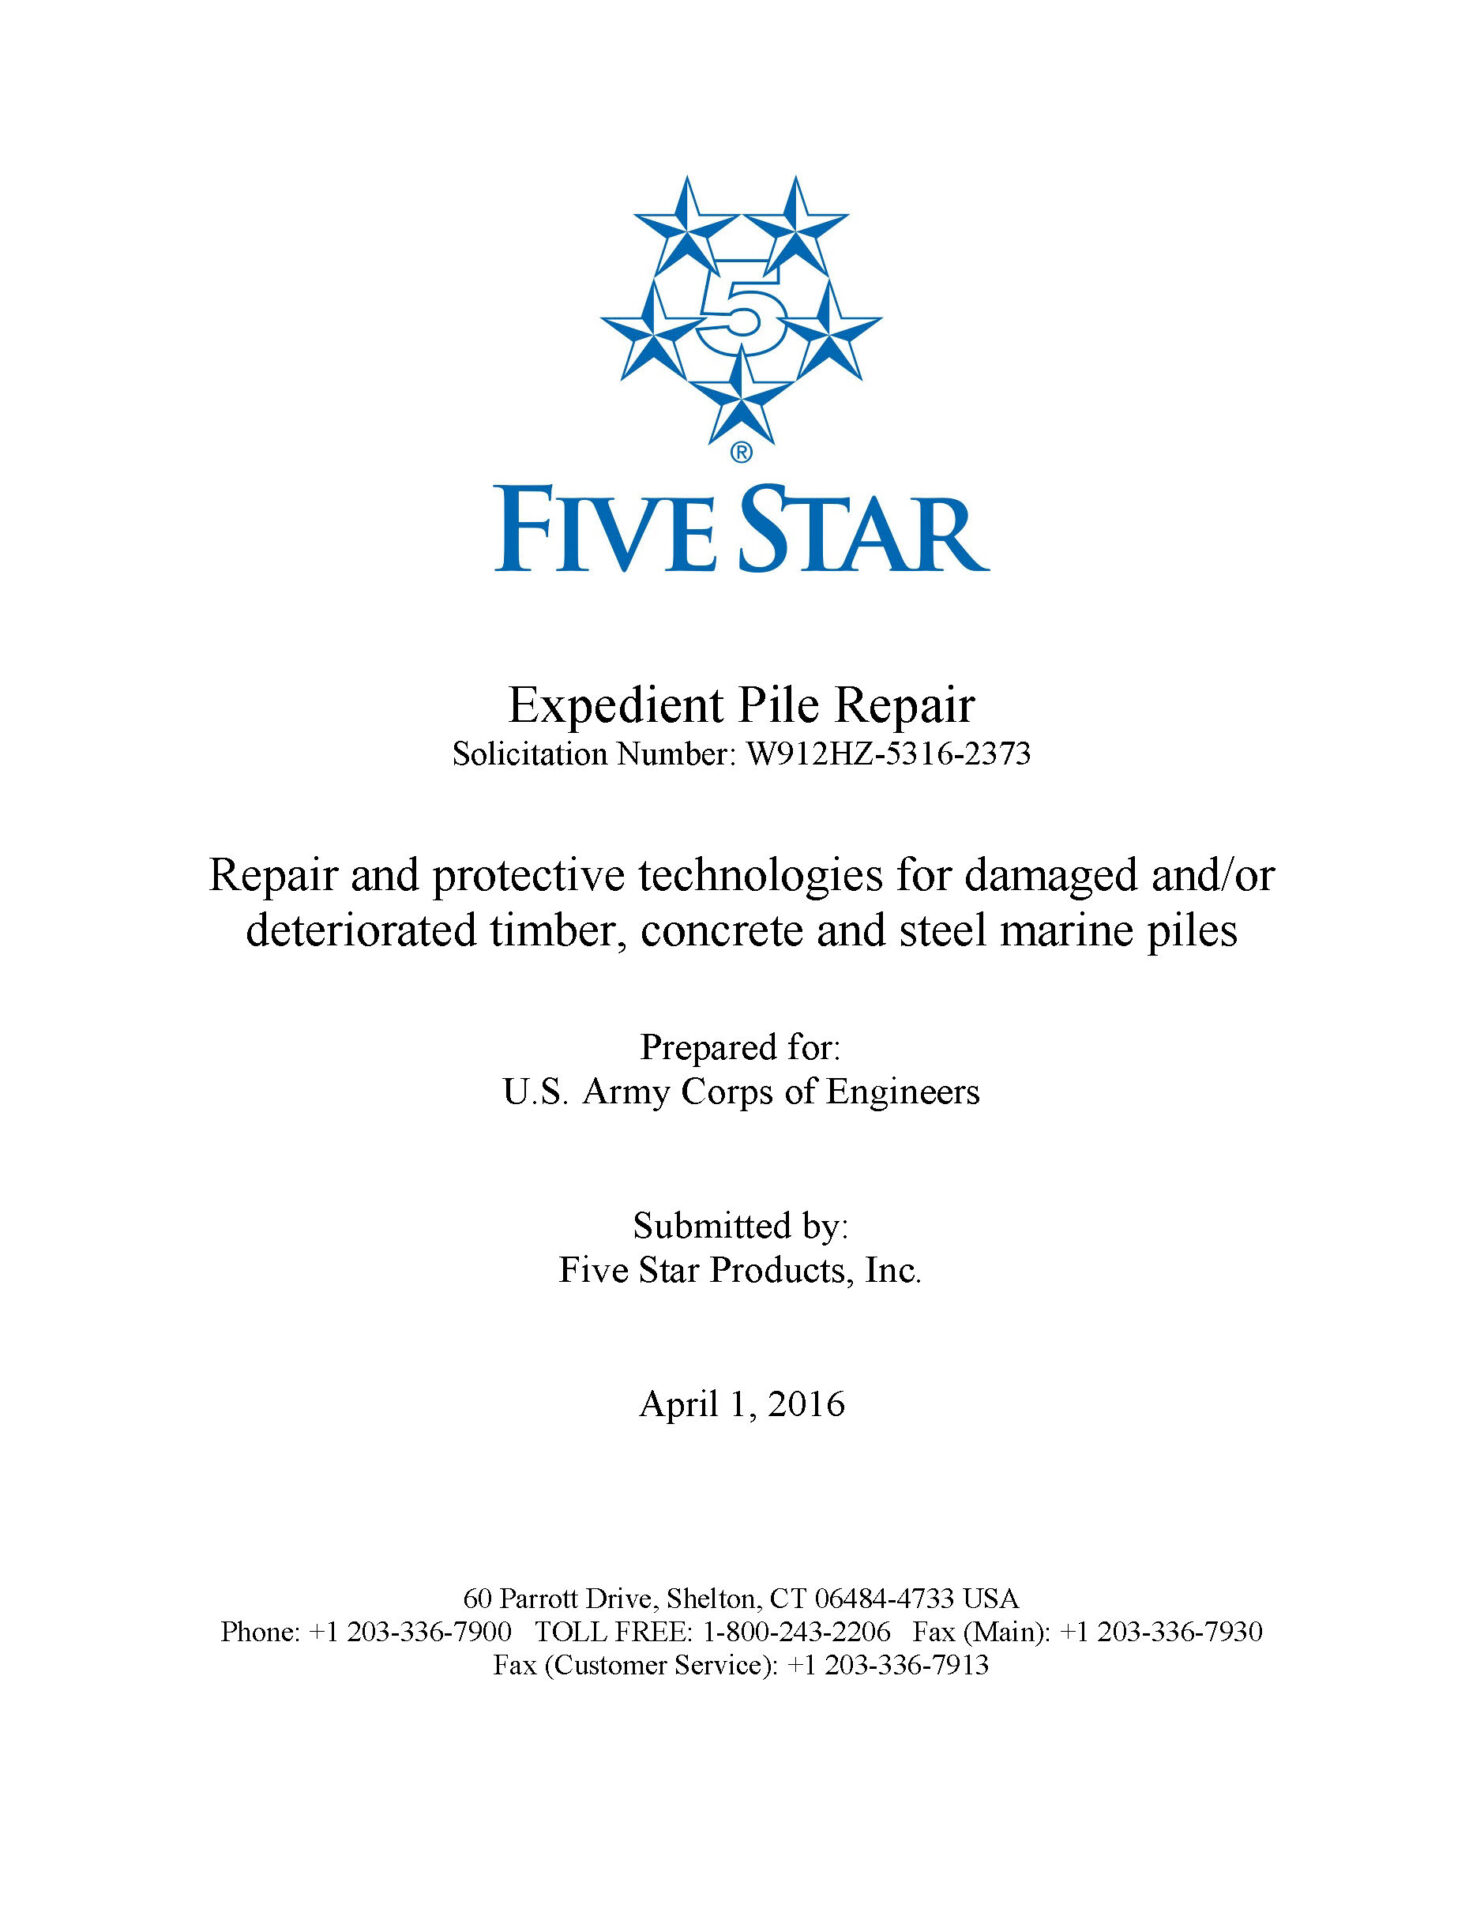 White paper: Expedient Pile Repair